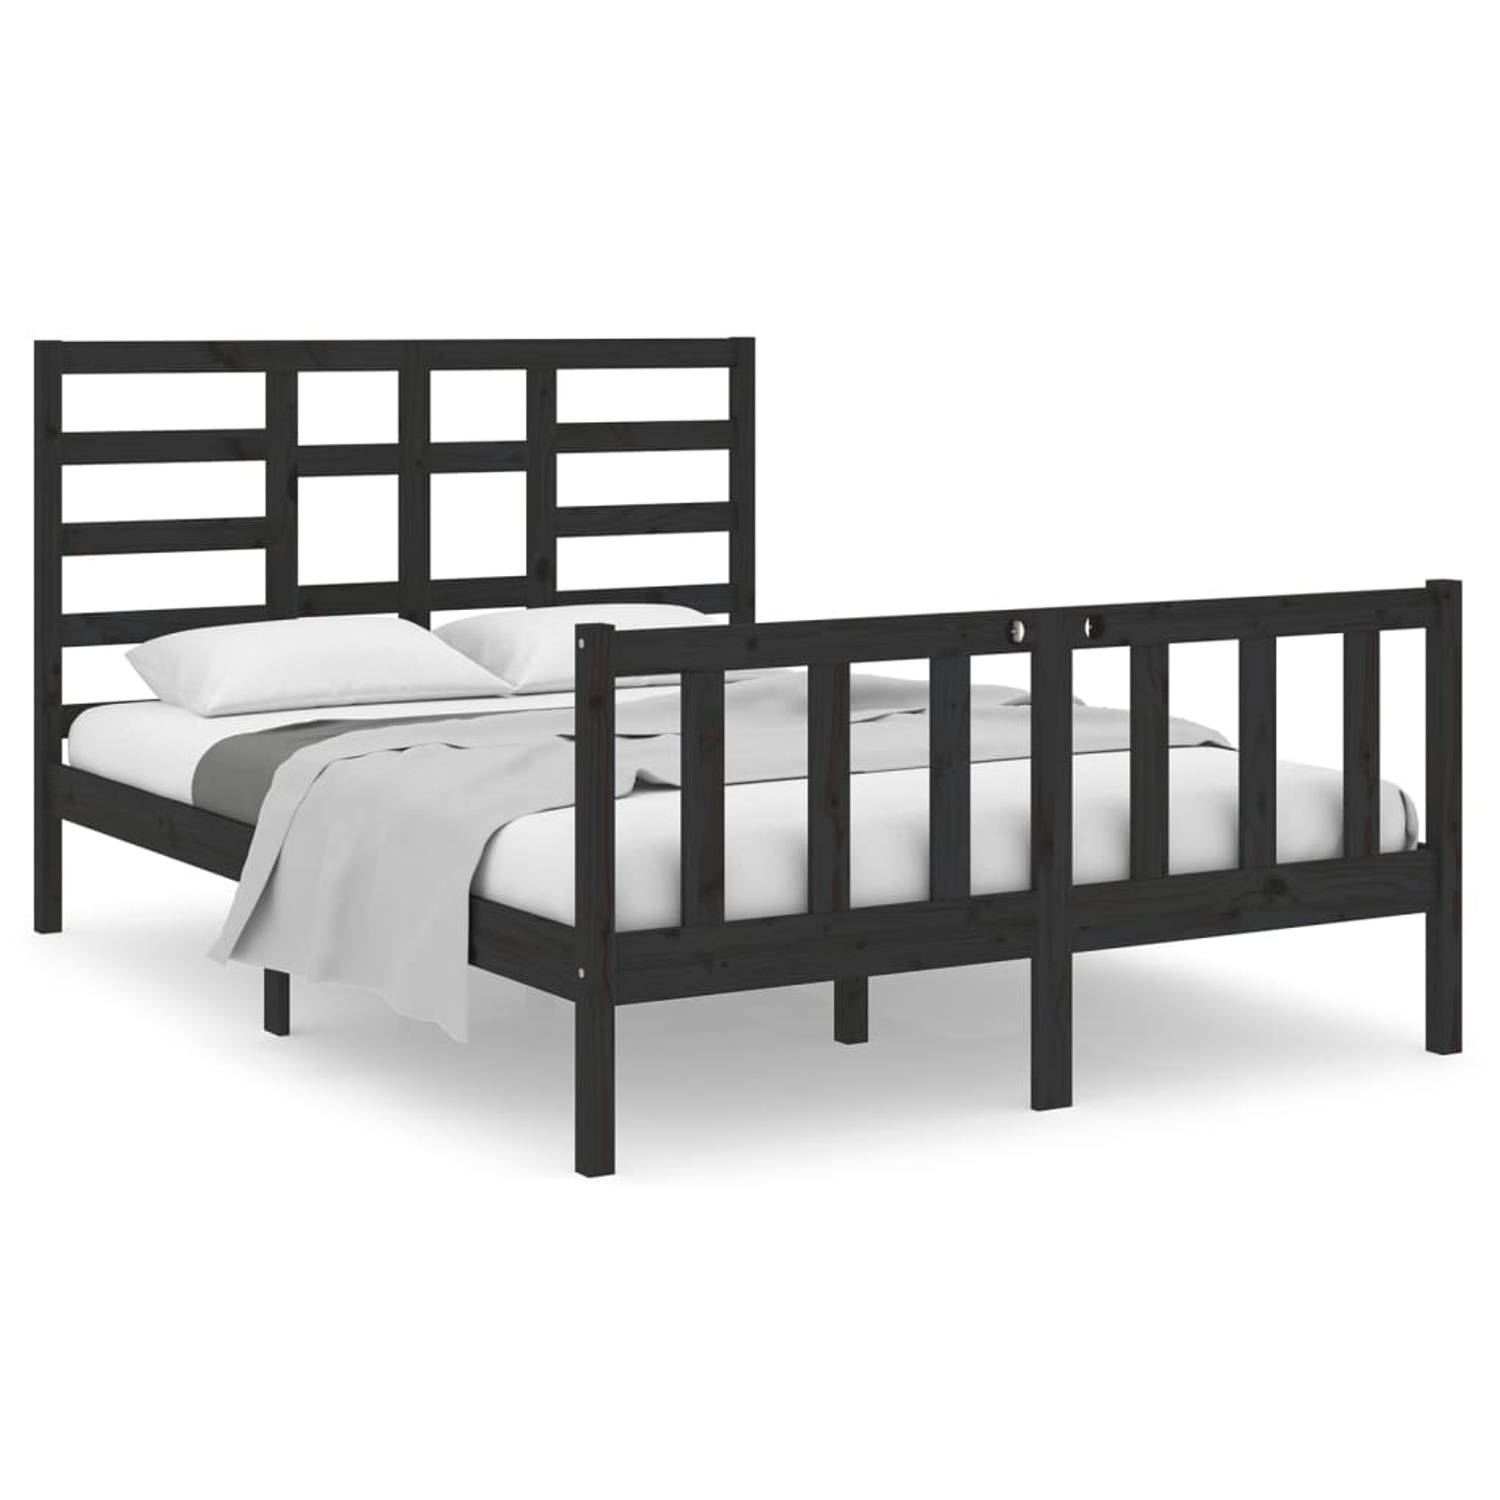 The Living Store Bedframe massief hout zwart 140x190 cm - Bedframe - Bedframes - Bed - Bedbodem - Ledikant - Bed Frame - Massief Houten Bedframe - Slaapmeubel - Tweepersoonsbed - B